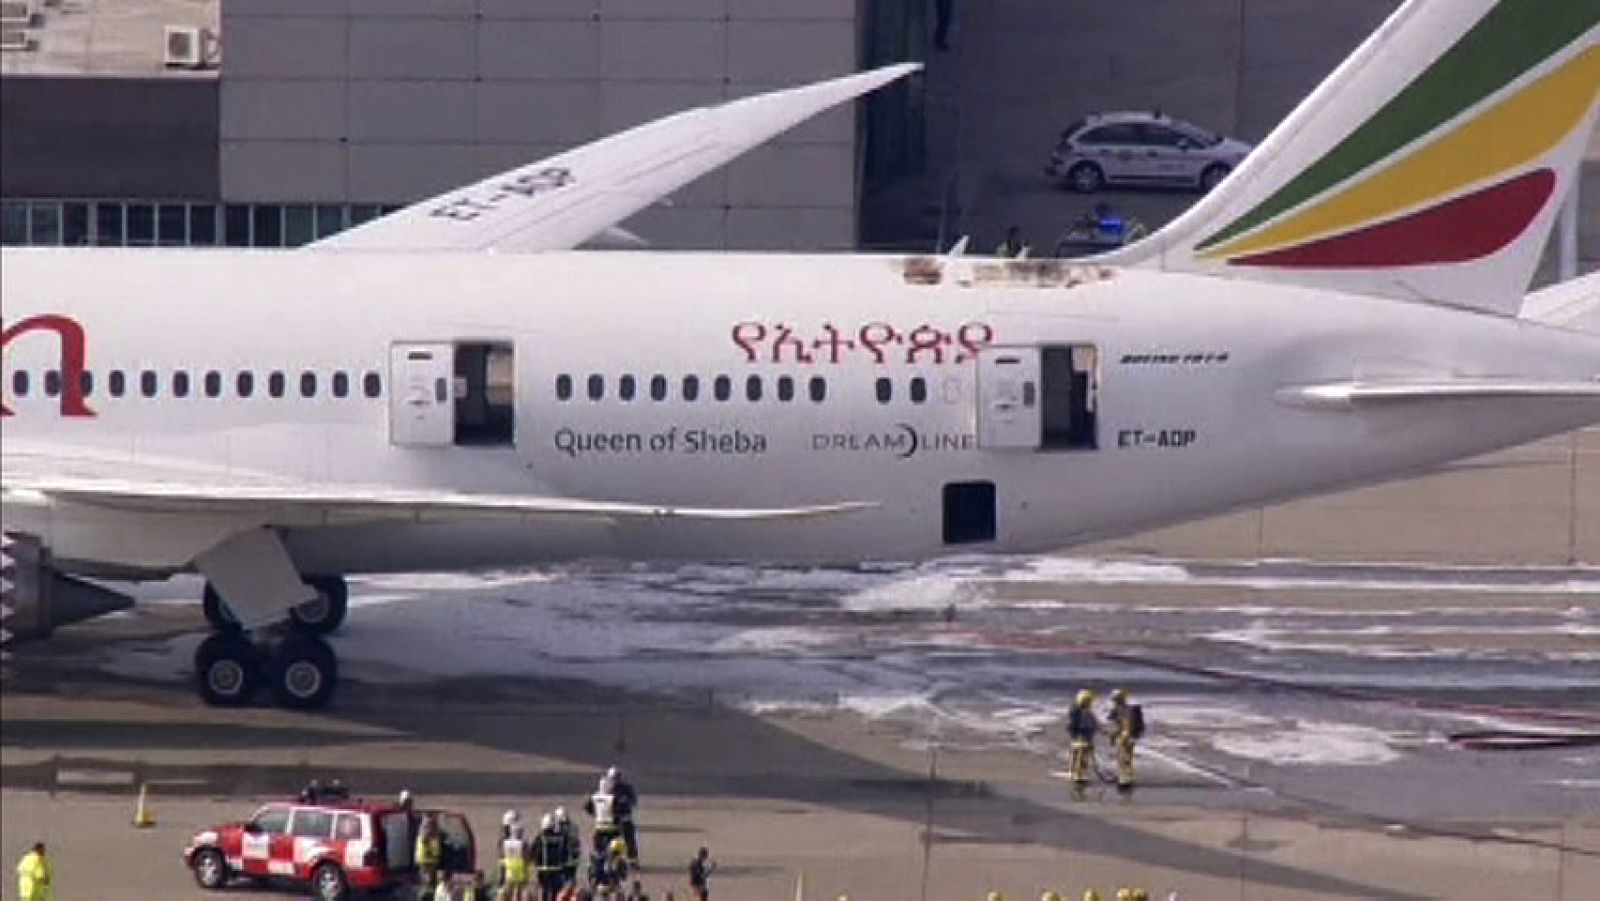 En el momento del incidente el avión estaba aparcado en una zona remota y no había pasajeros a bordo